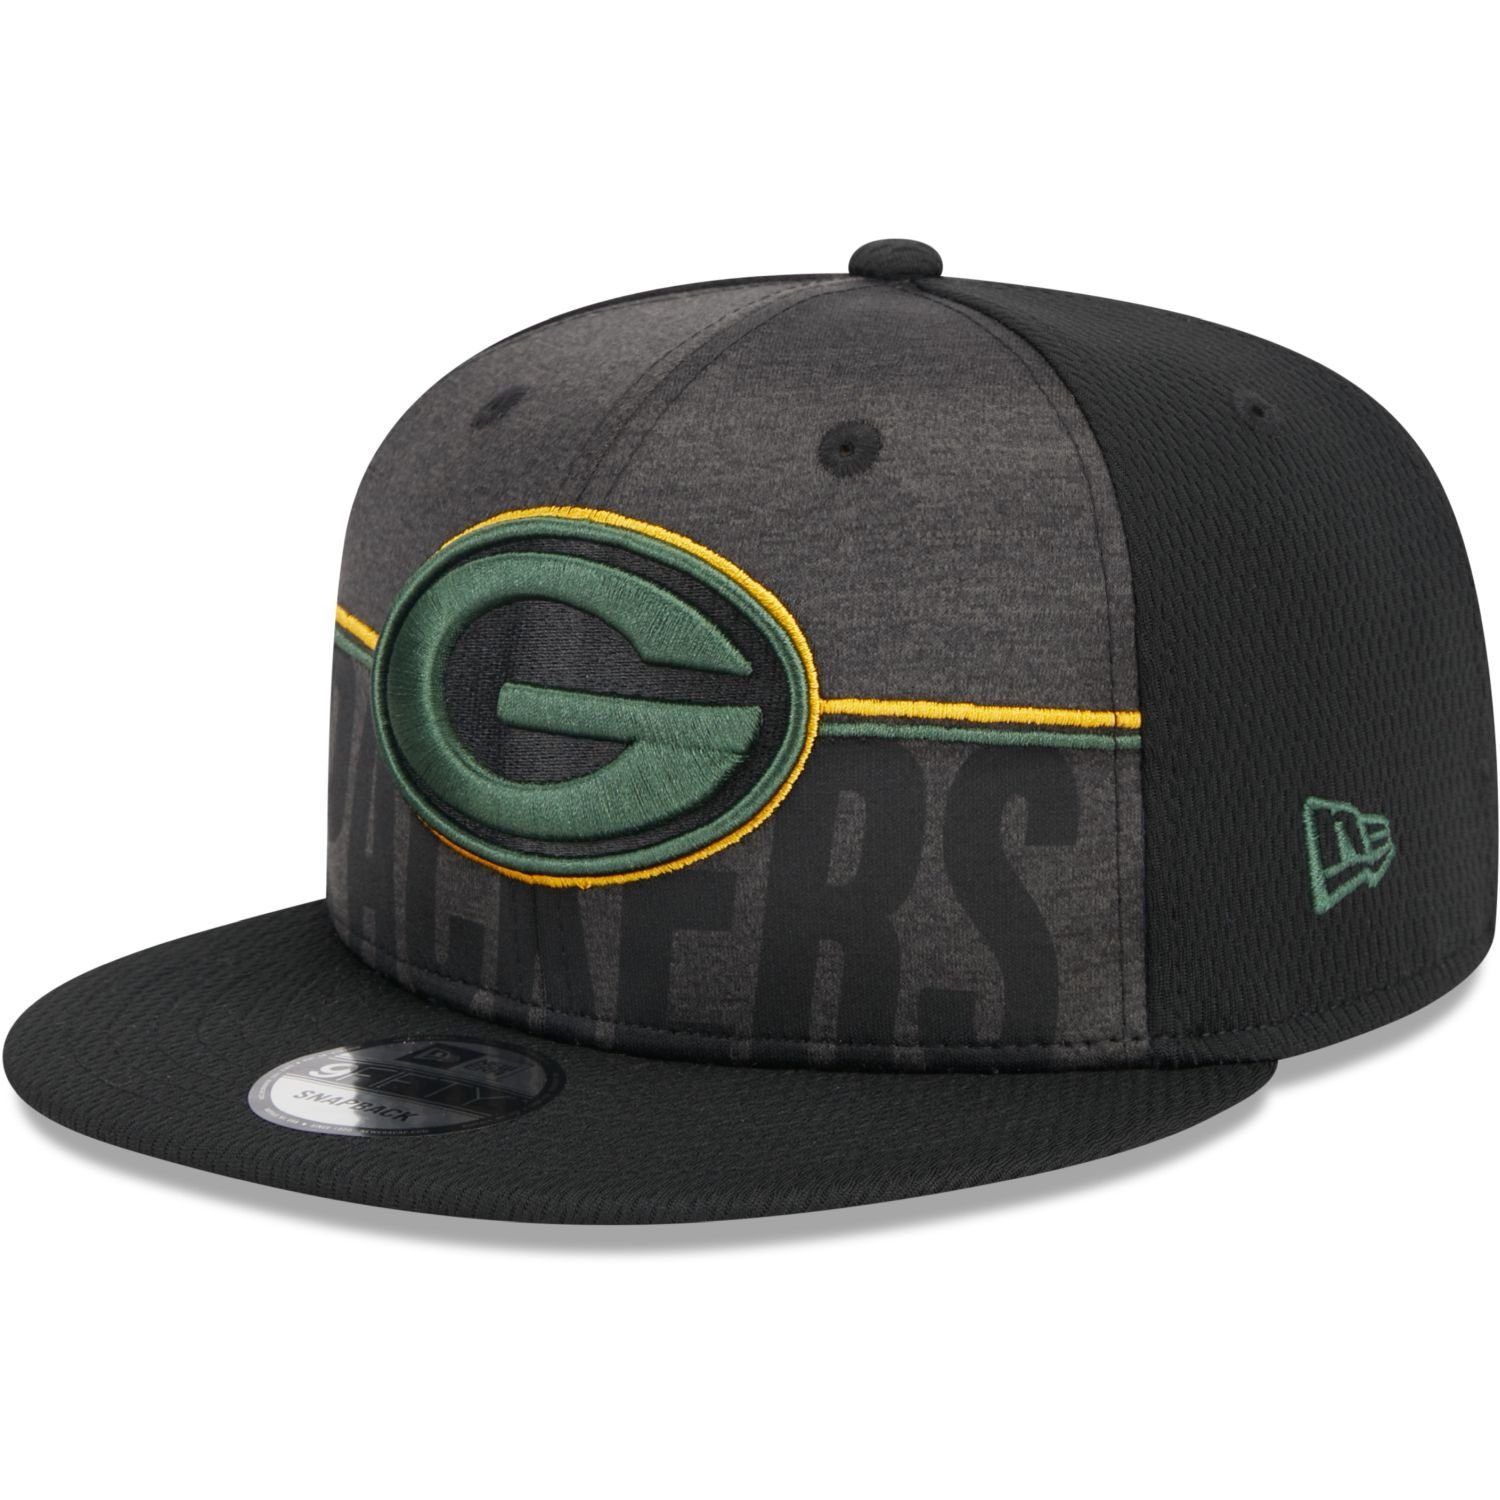 New Era Snapback Cap 9FIFTY TRAINING Green Bay Packers